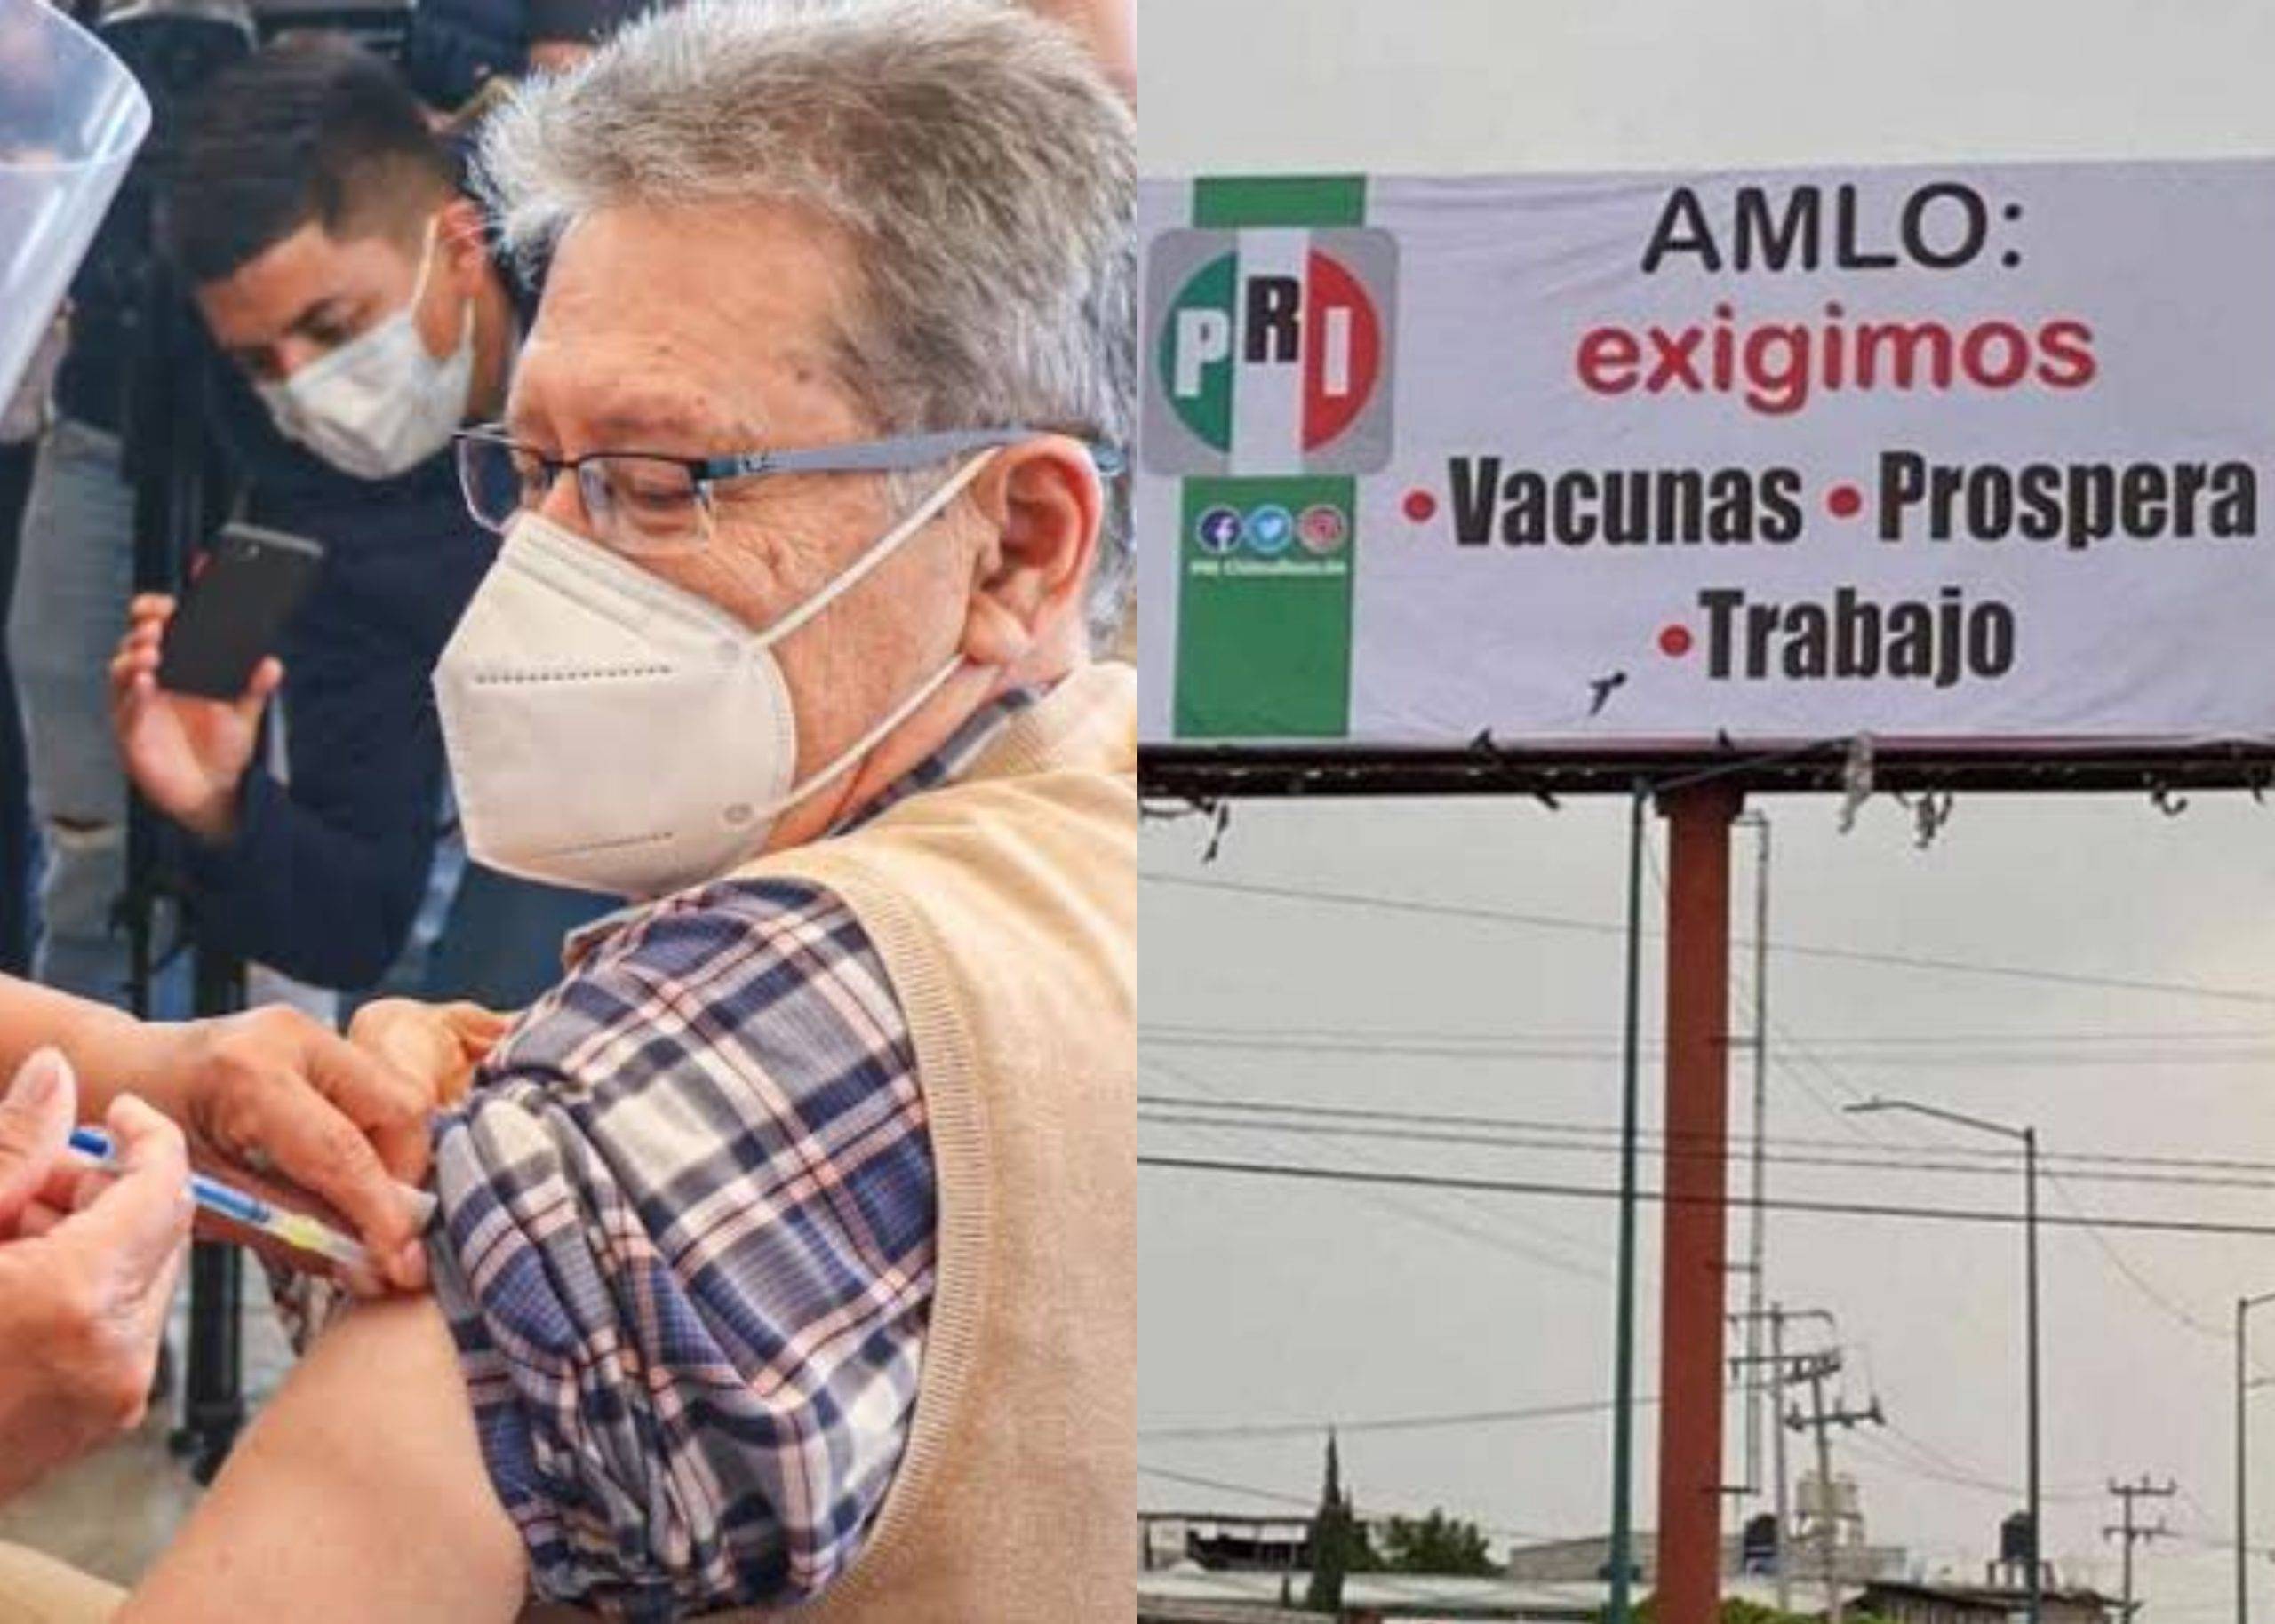 Denuncian a alcalde de Chimalhuacán por uso electoral de vacuna